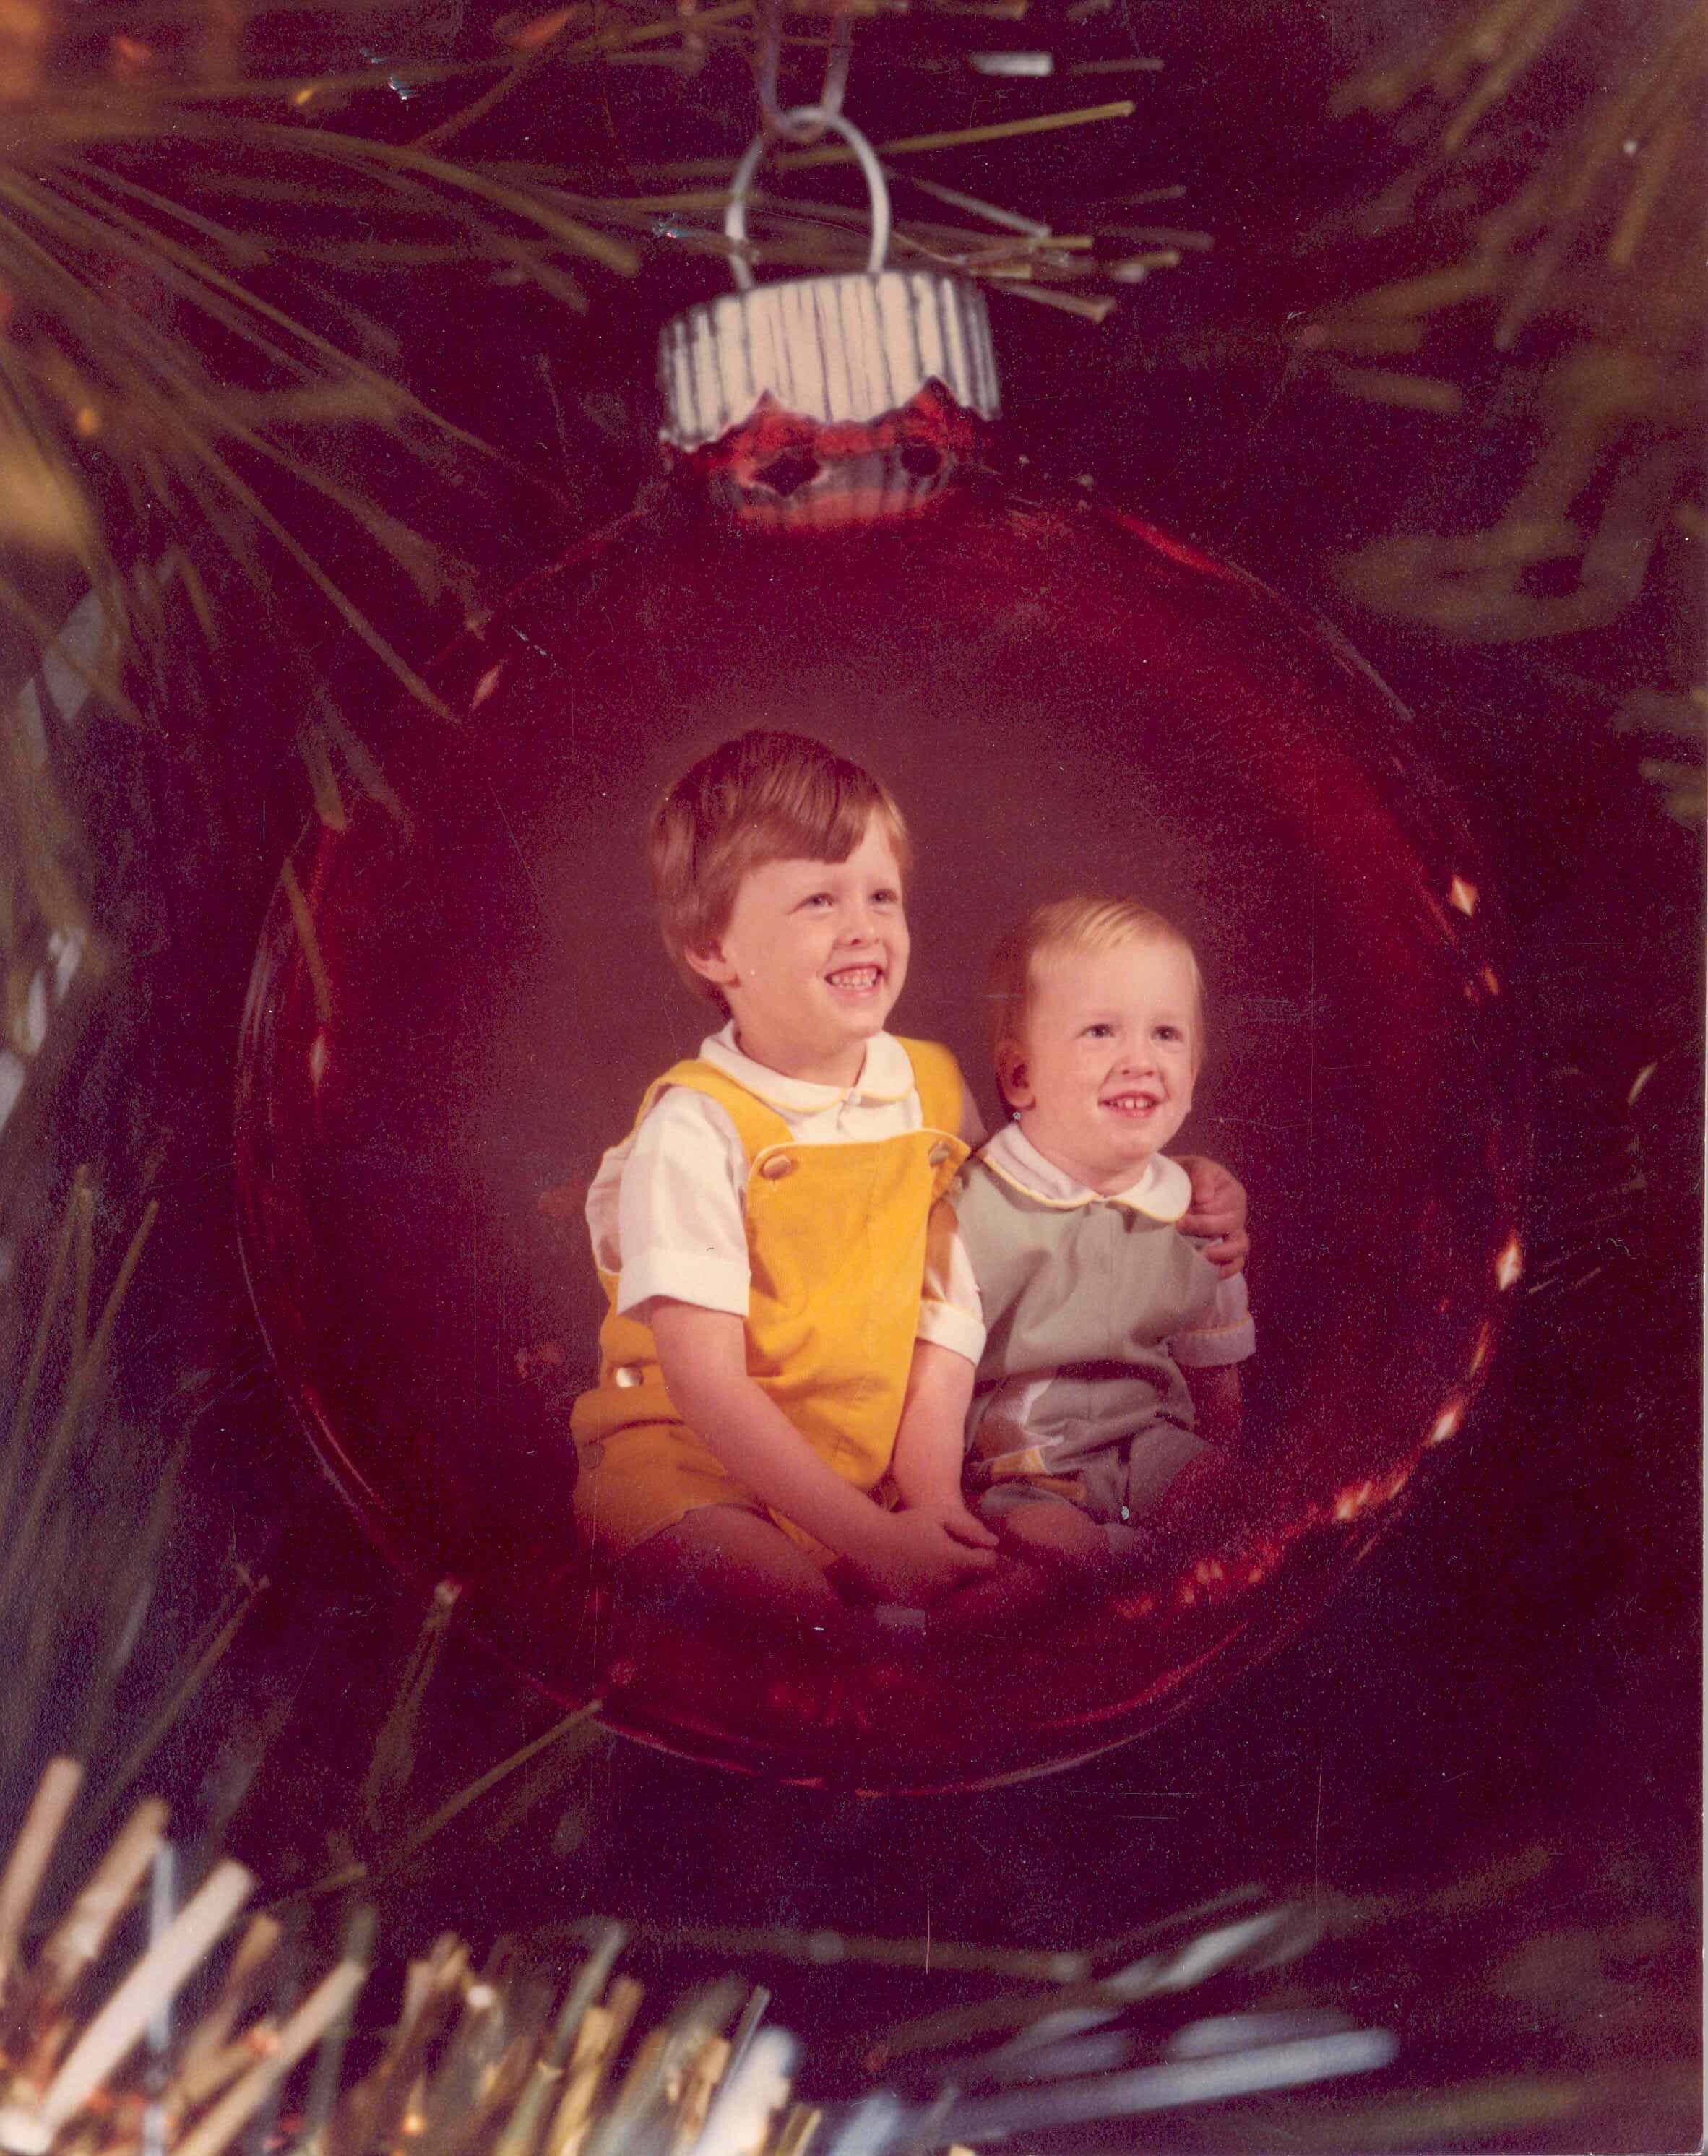 Chris & Me, 1979